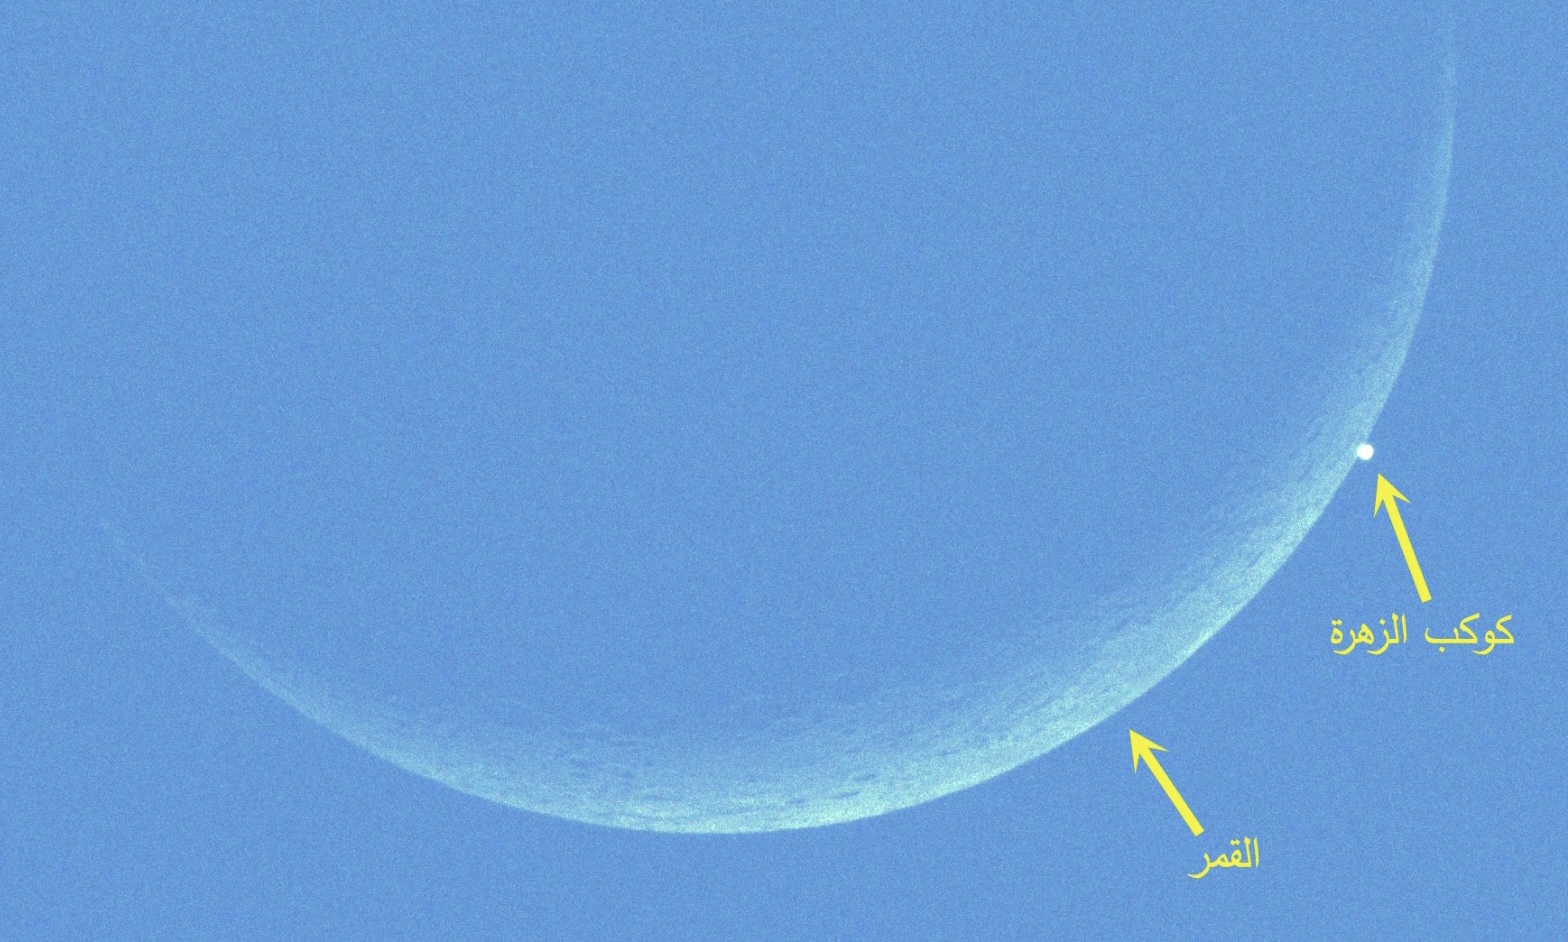 رصد ظاهرة احتجاب كوكب الزهرة النير خلف قرص القمر في سماء الإمارات